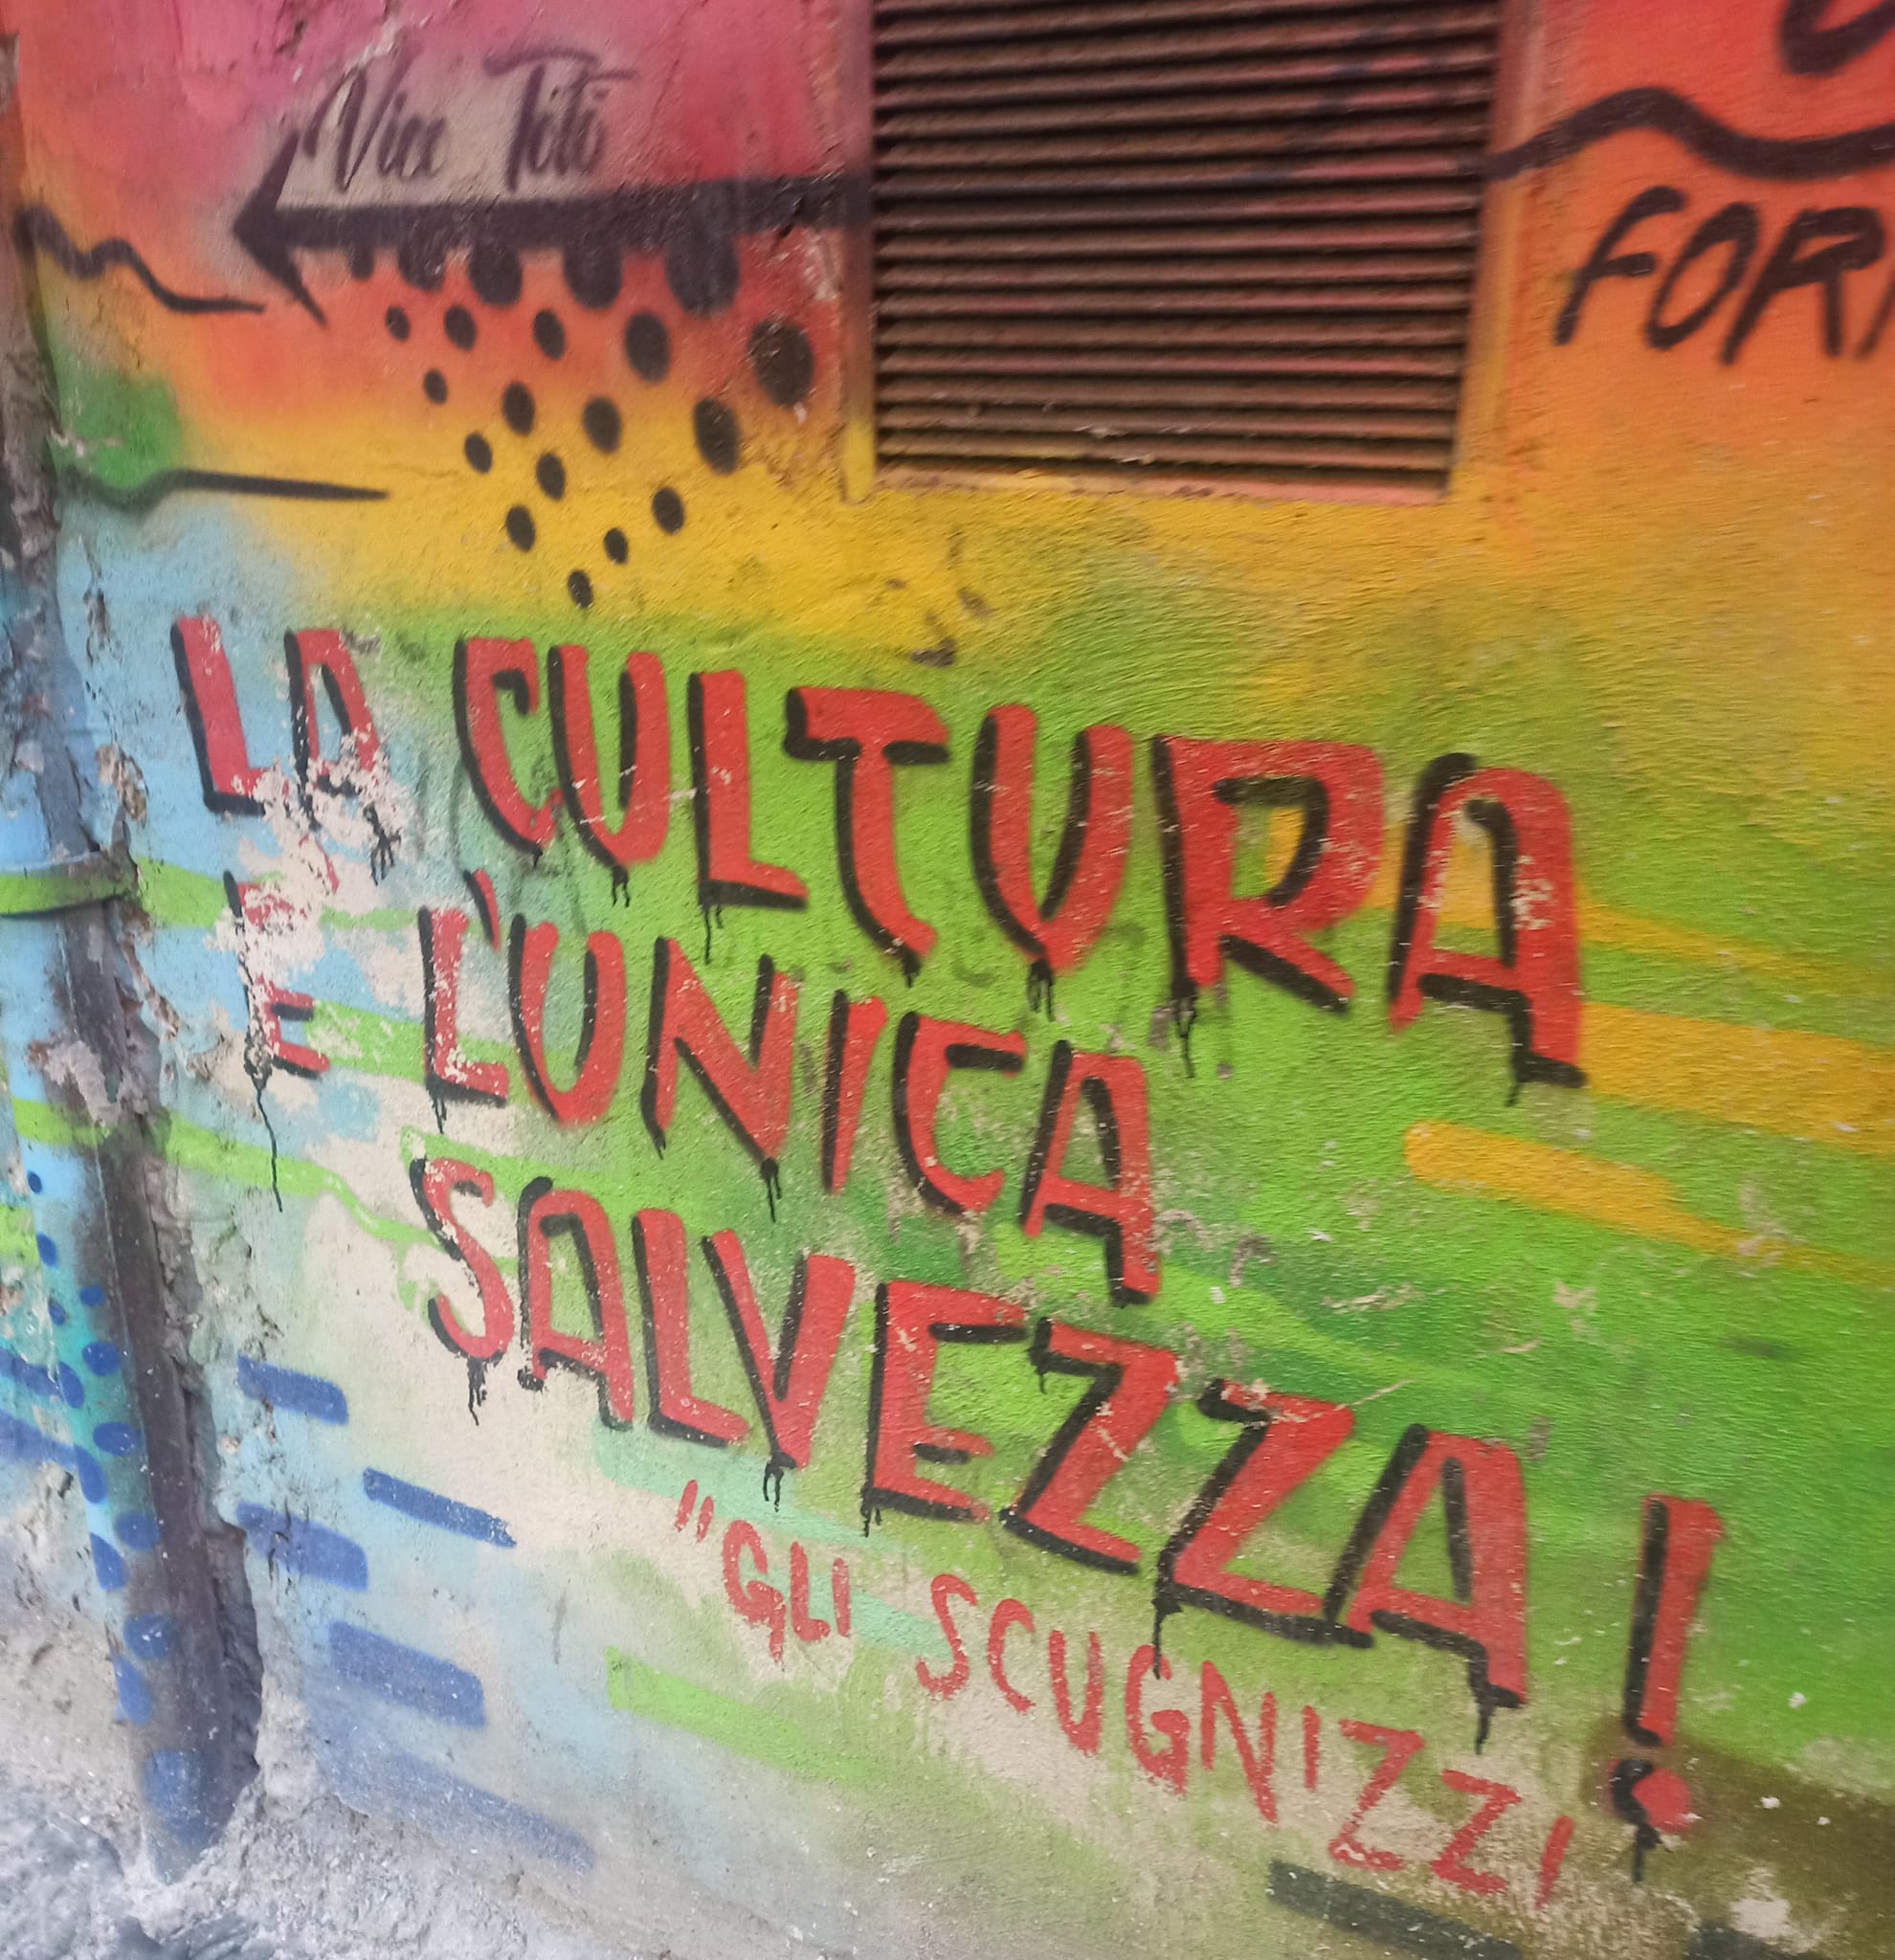 Scritta murale a Napoli